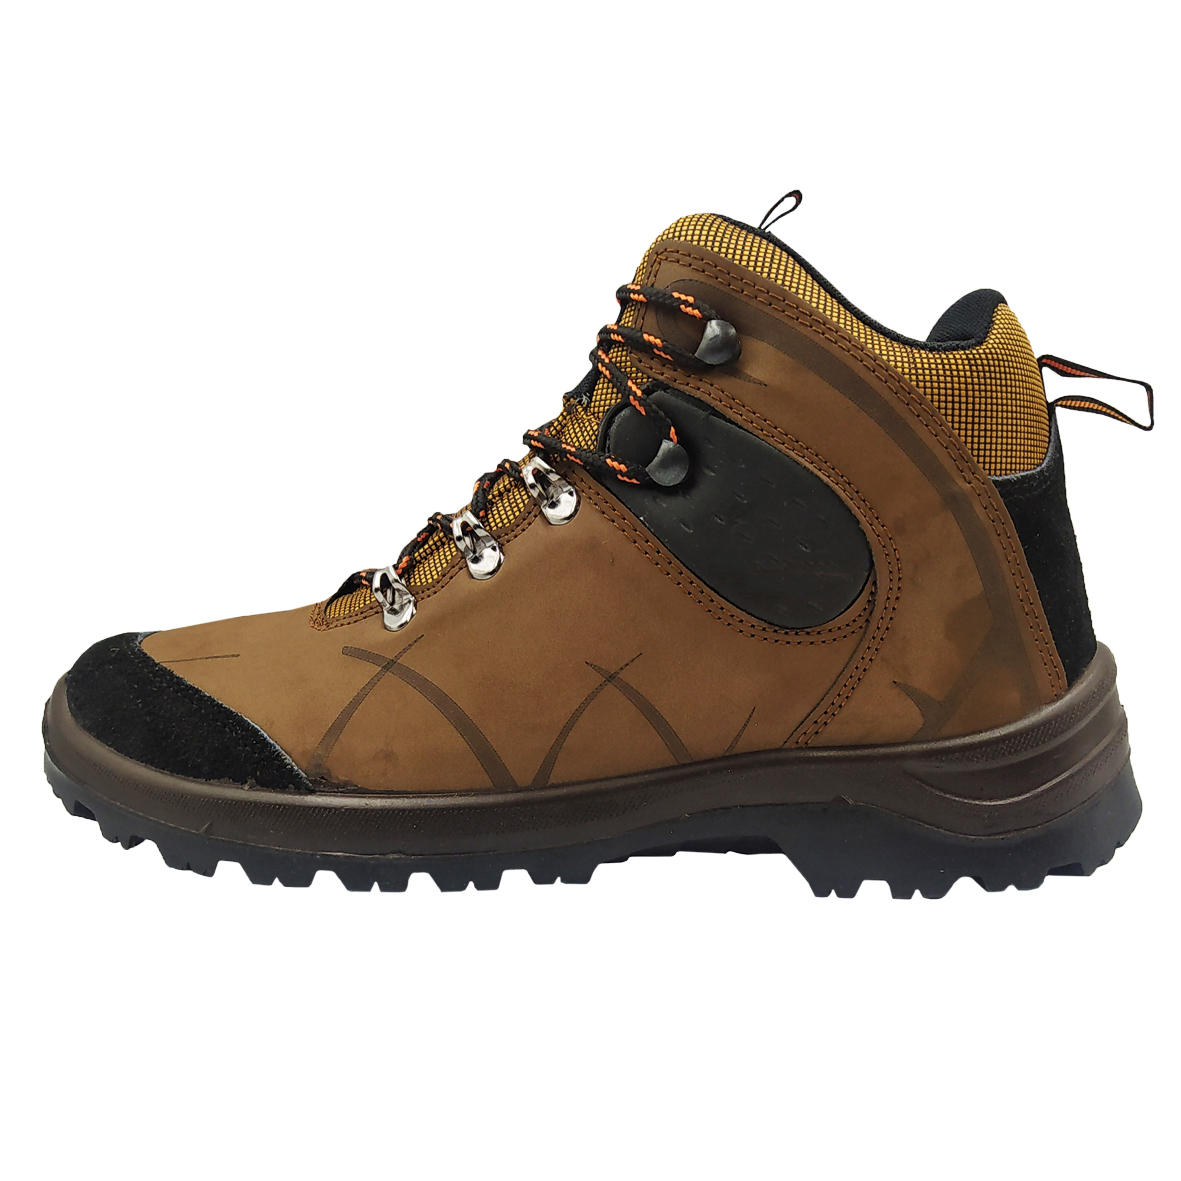 نکته خرید - قیمت روز کفش کوهنوردی مردانه مدل 1534002 رنگ قهوه ای خرید